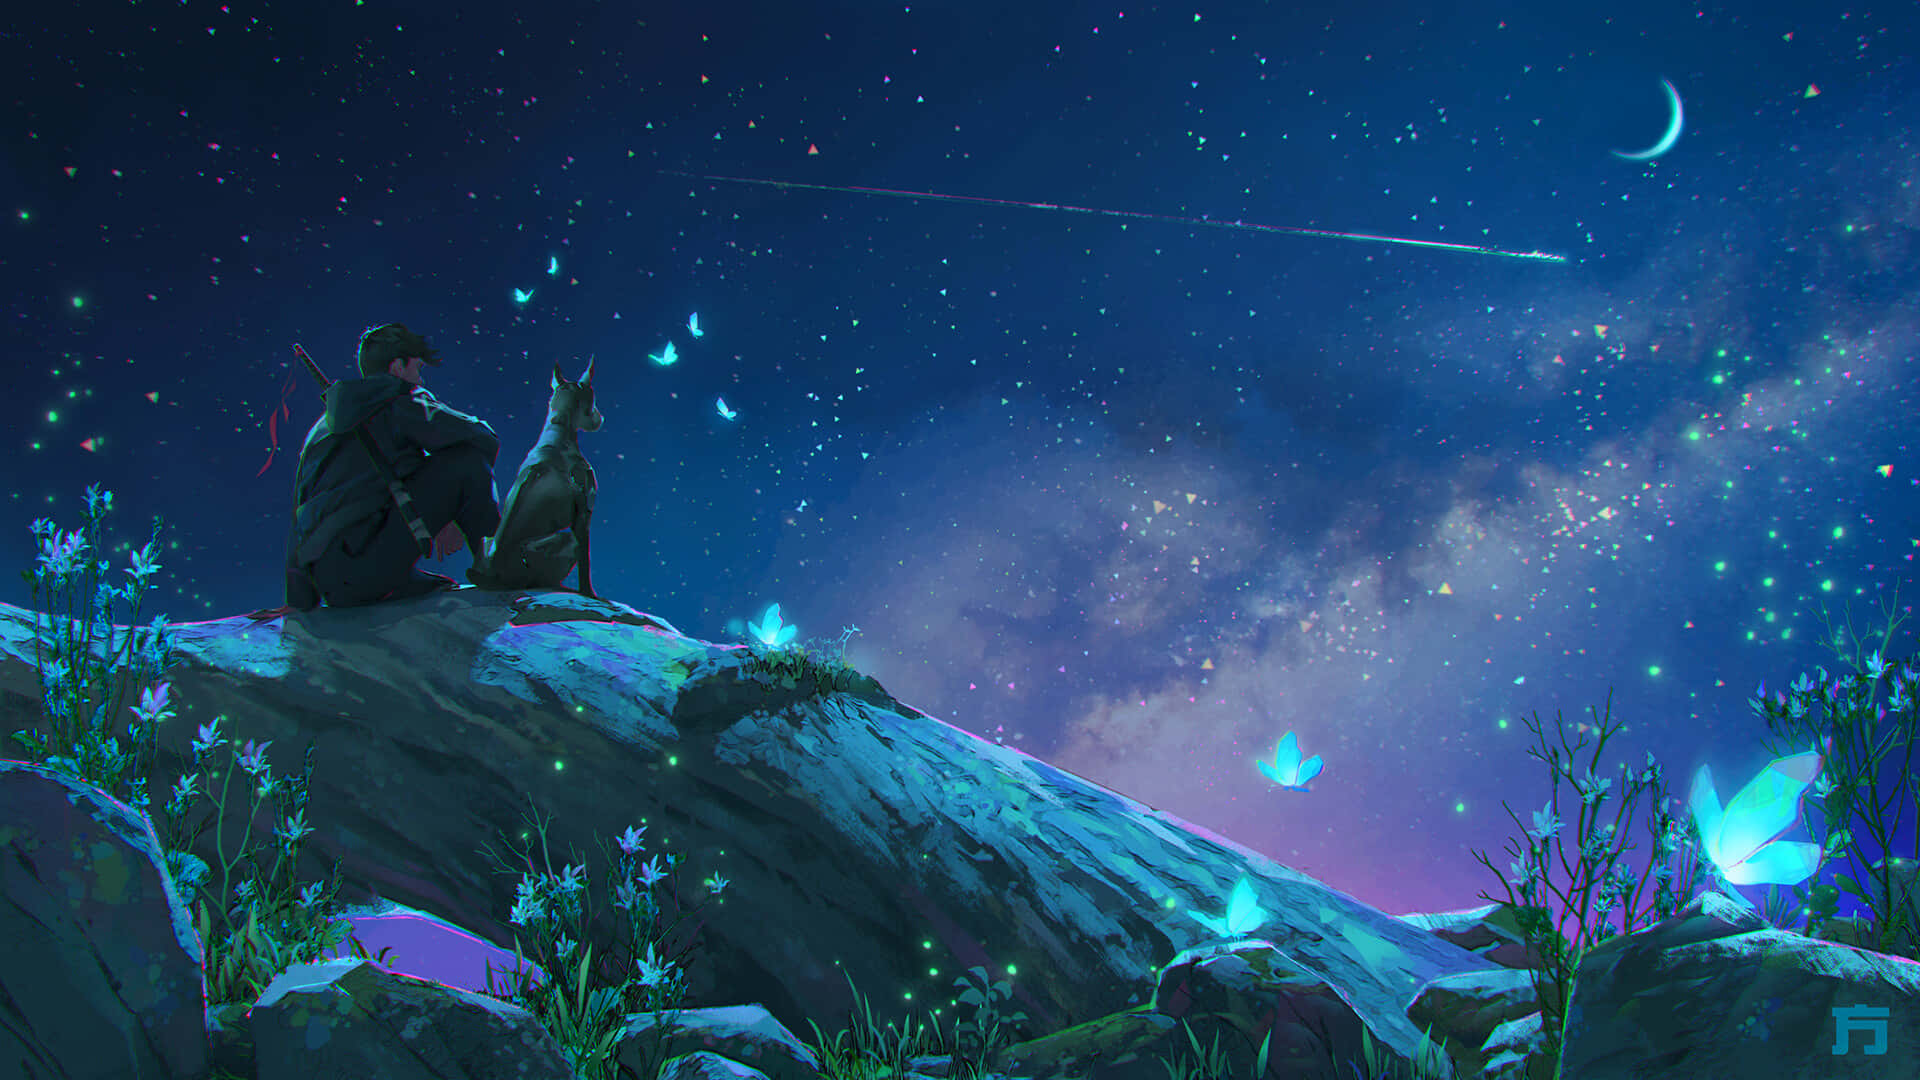 Anime Night Scenery Dog Background